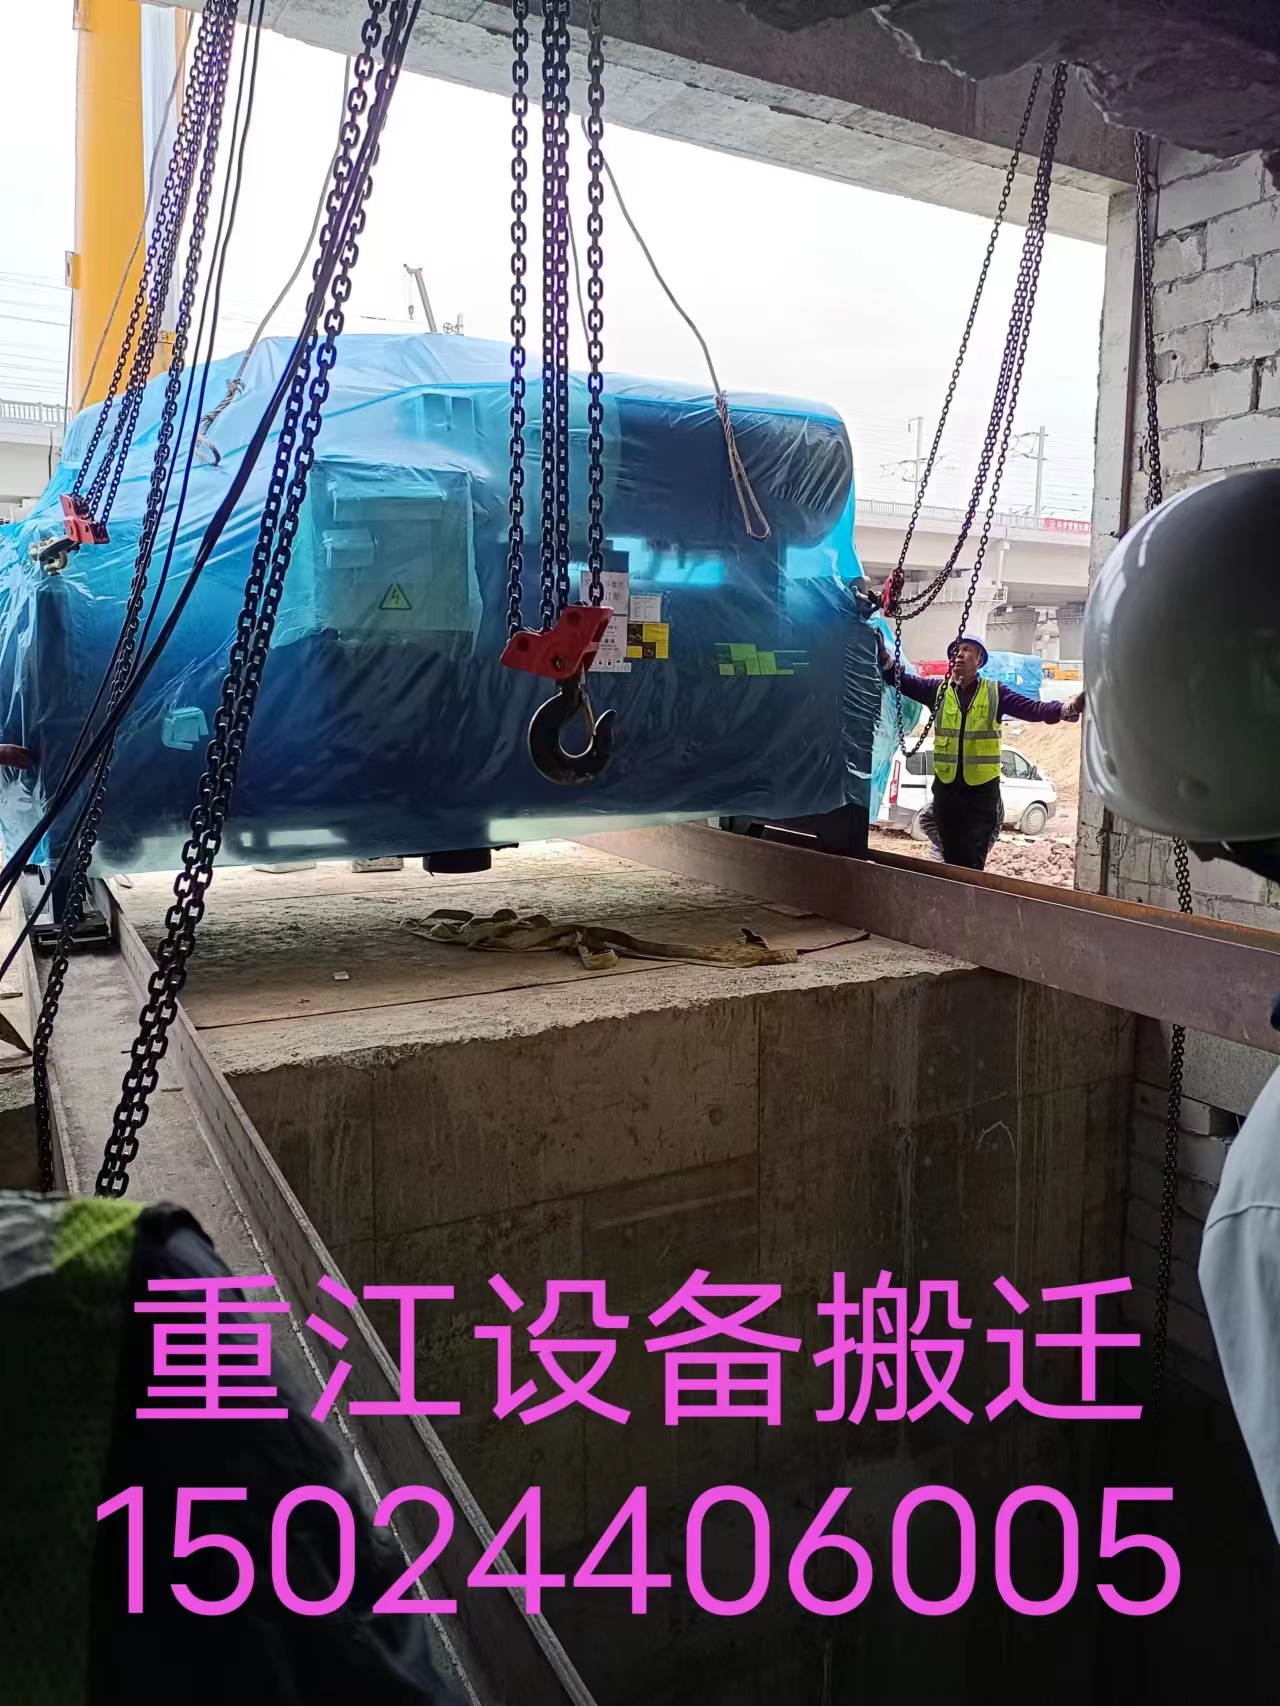 闲林设备搬运公司  超大笨重机器设备搬迁搬厂 重江服务图片